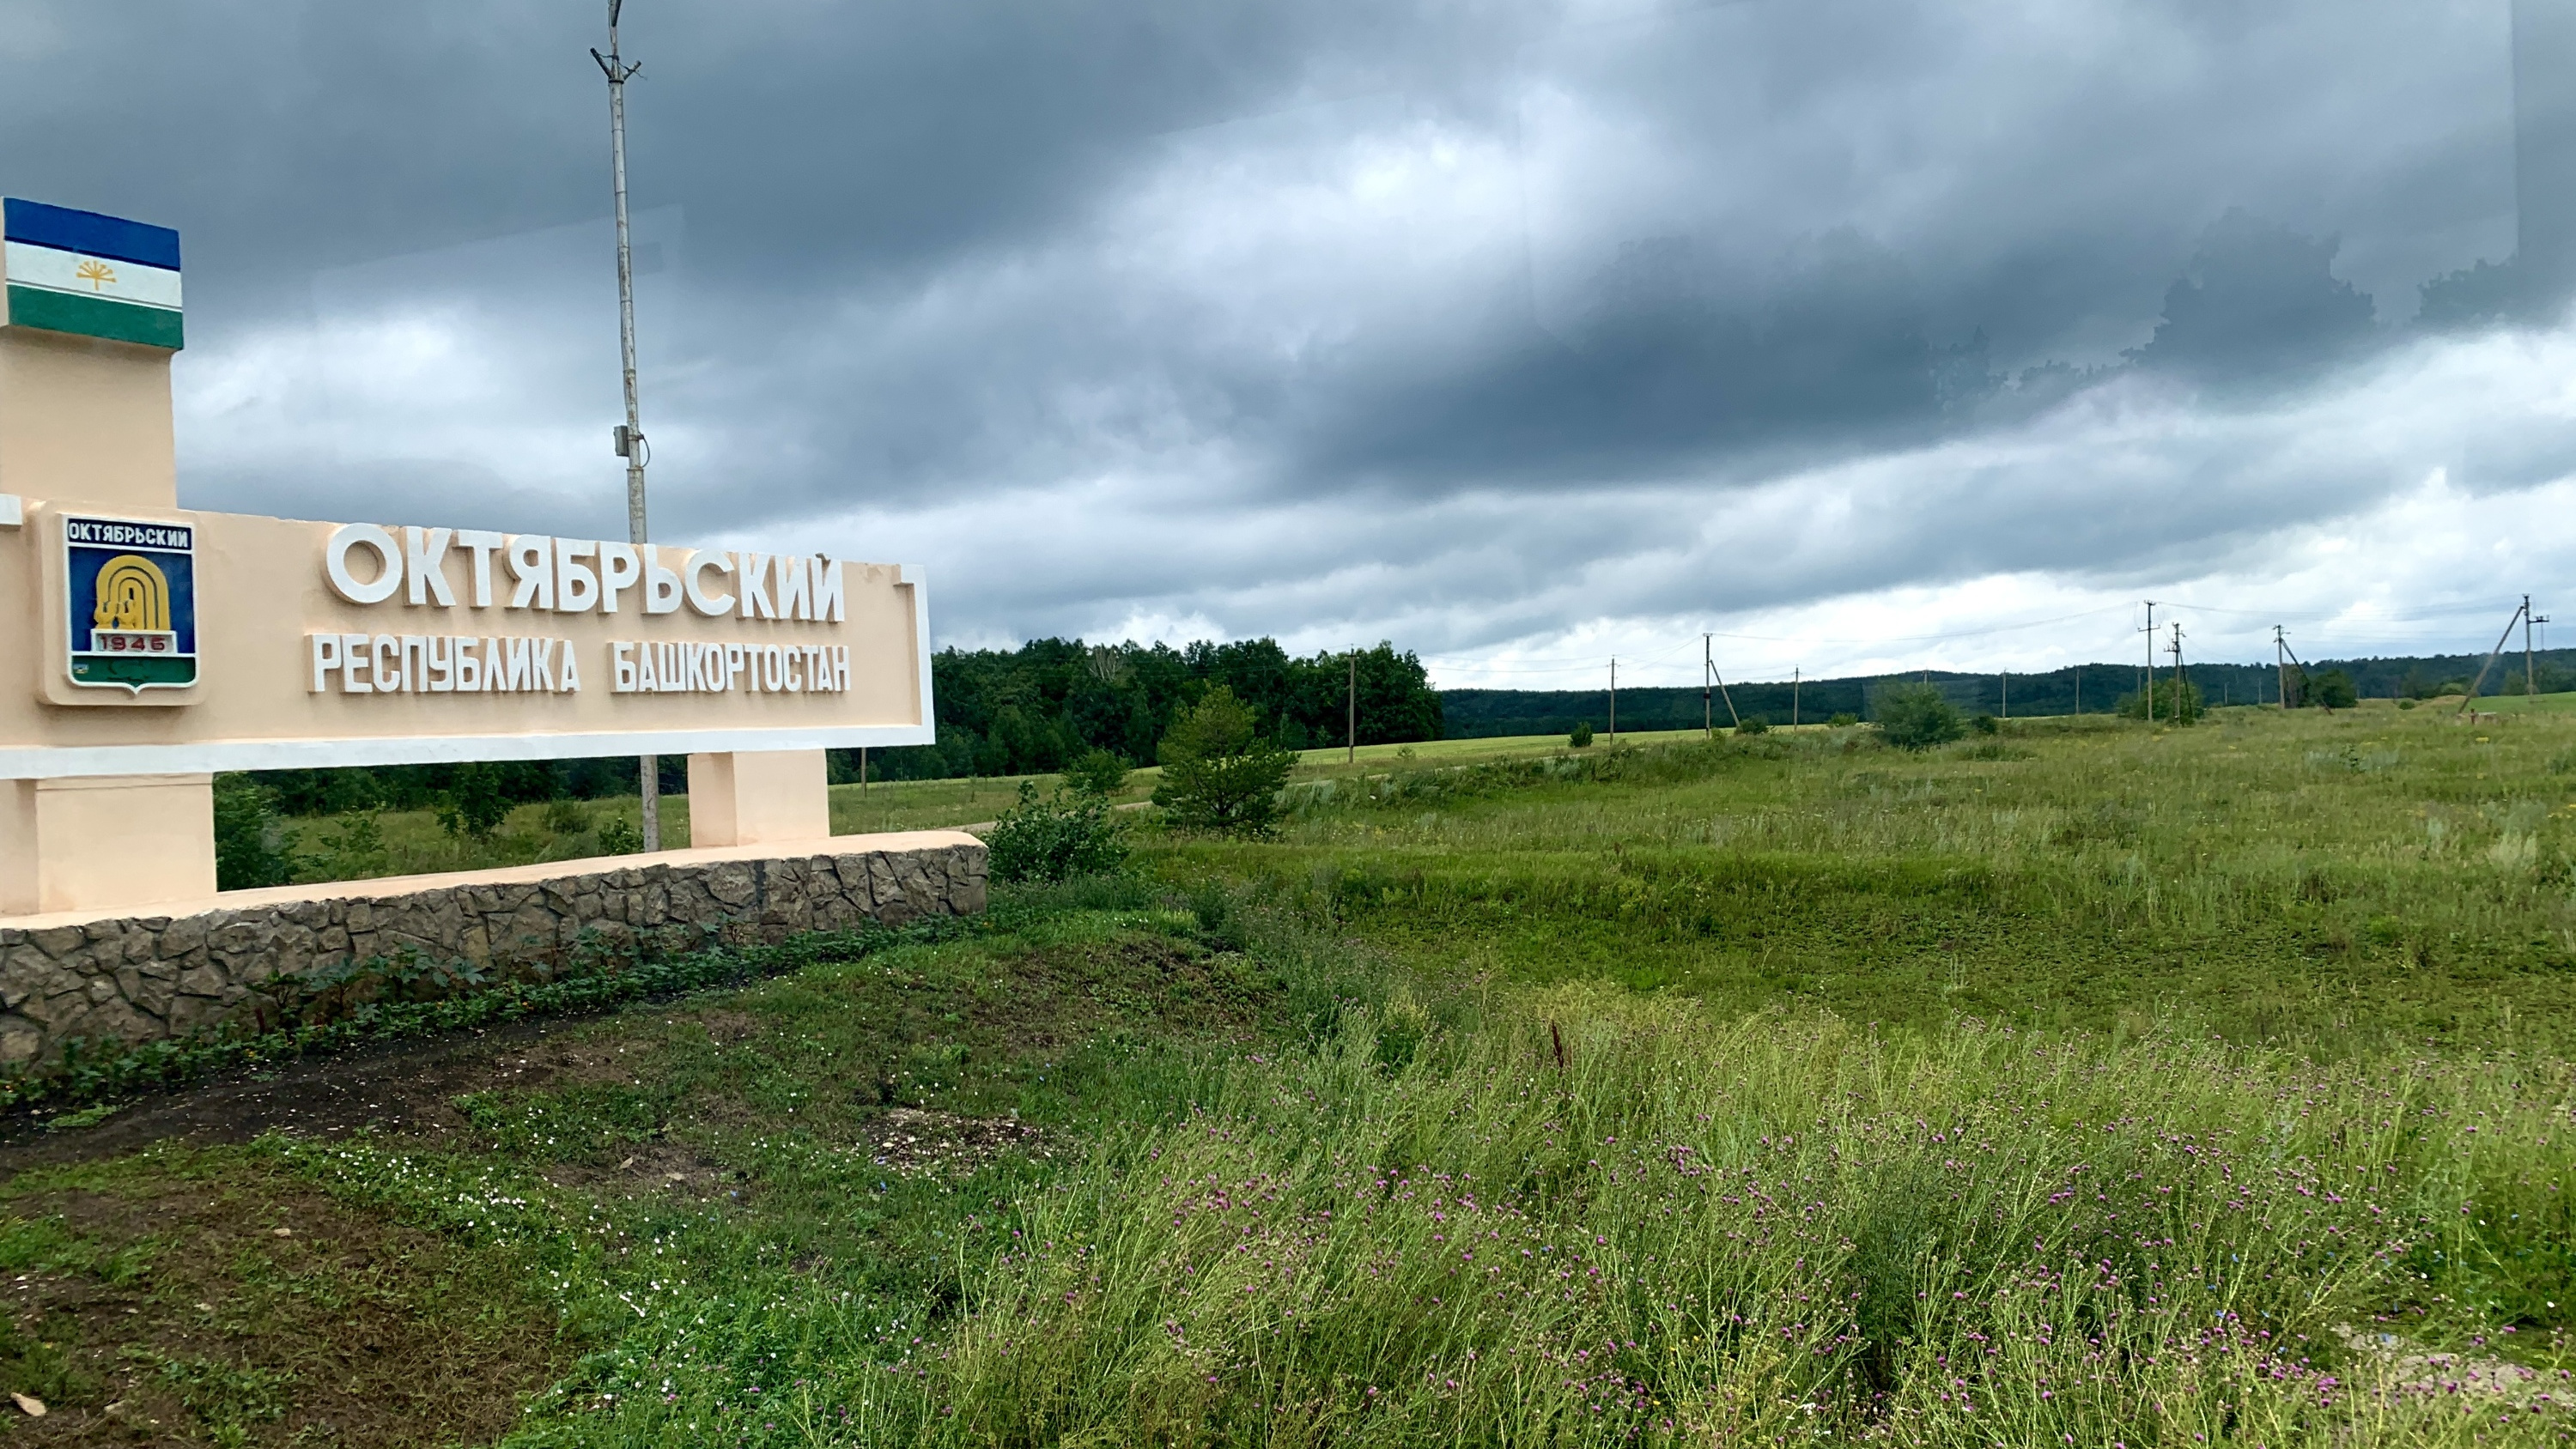 Горы вокруг, такси «нулевых» и парадокс времени: репортаж из города нефтяников на границе с Татарстаном